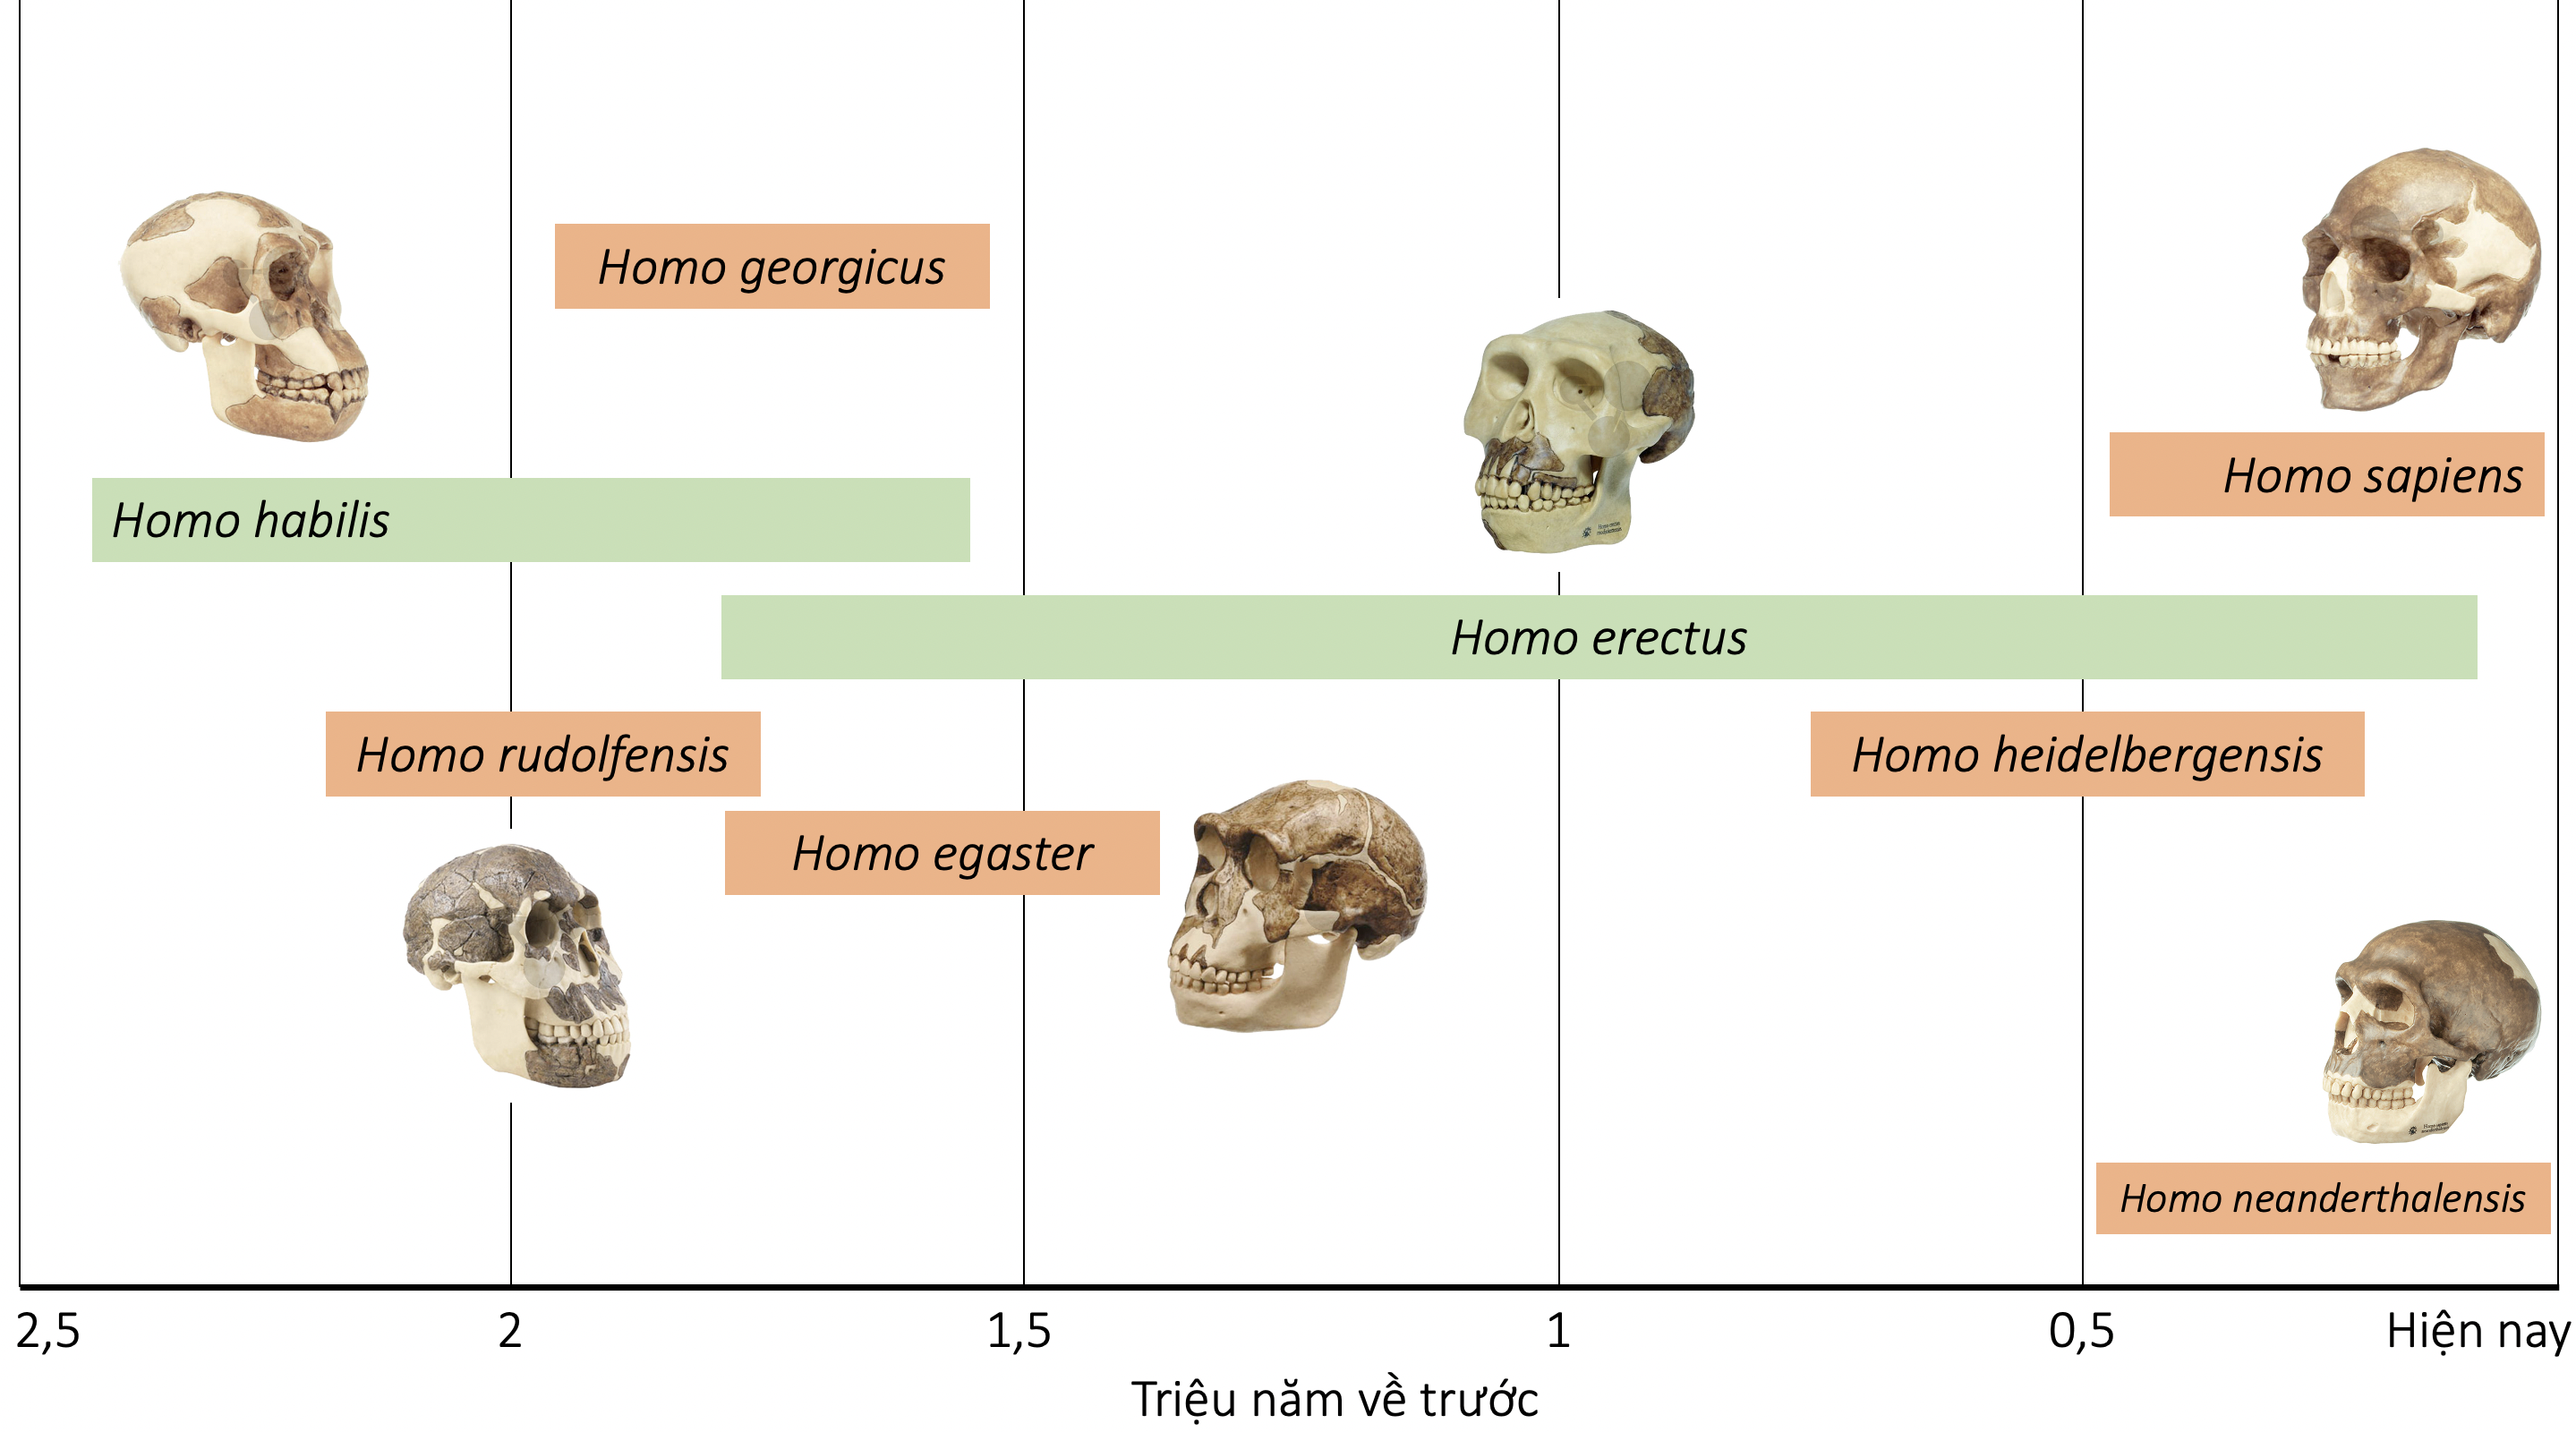 Quá trình phát sinh loài trong chi homo olm